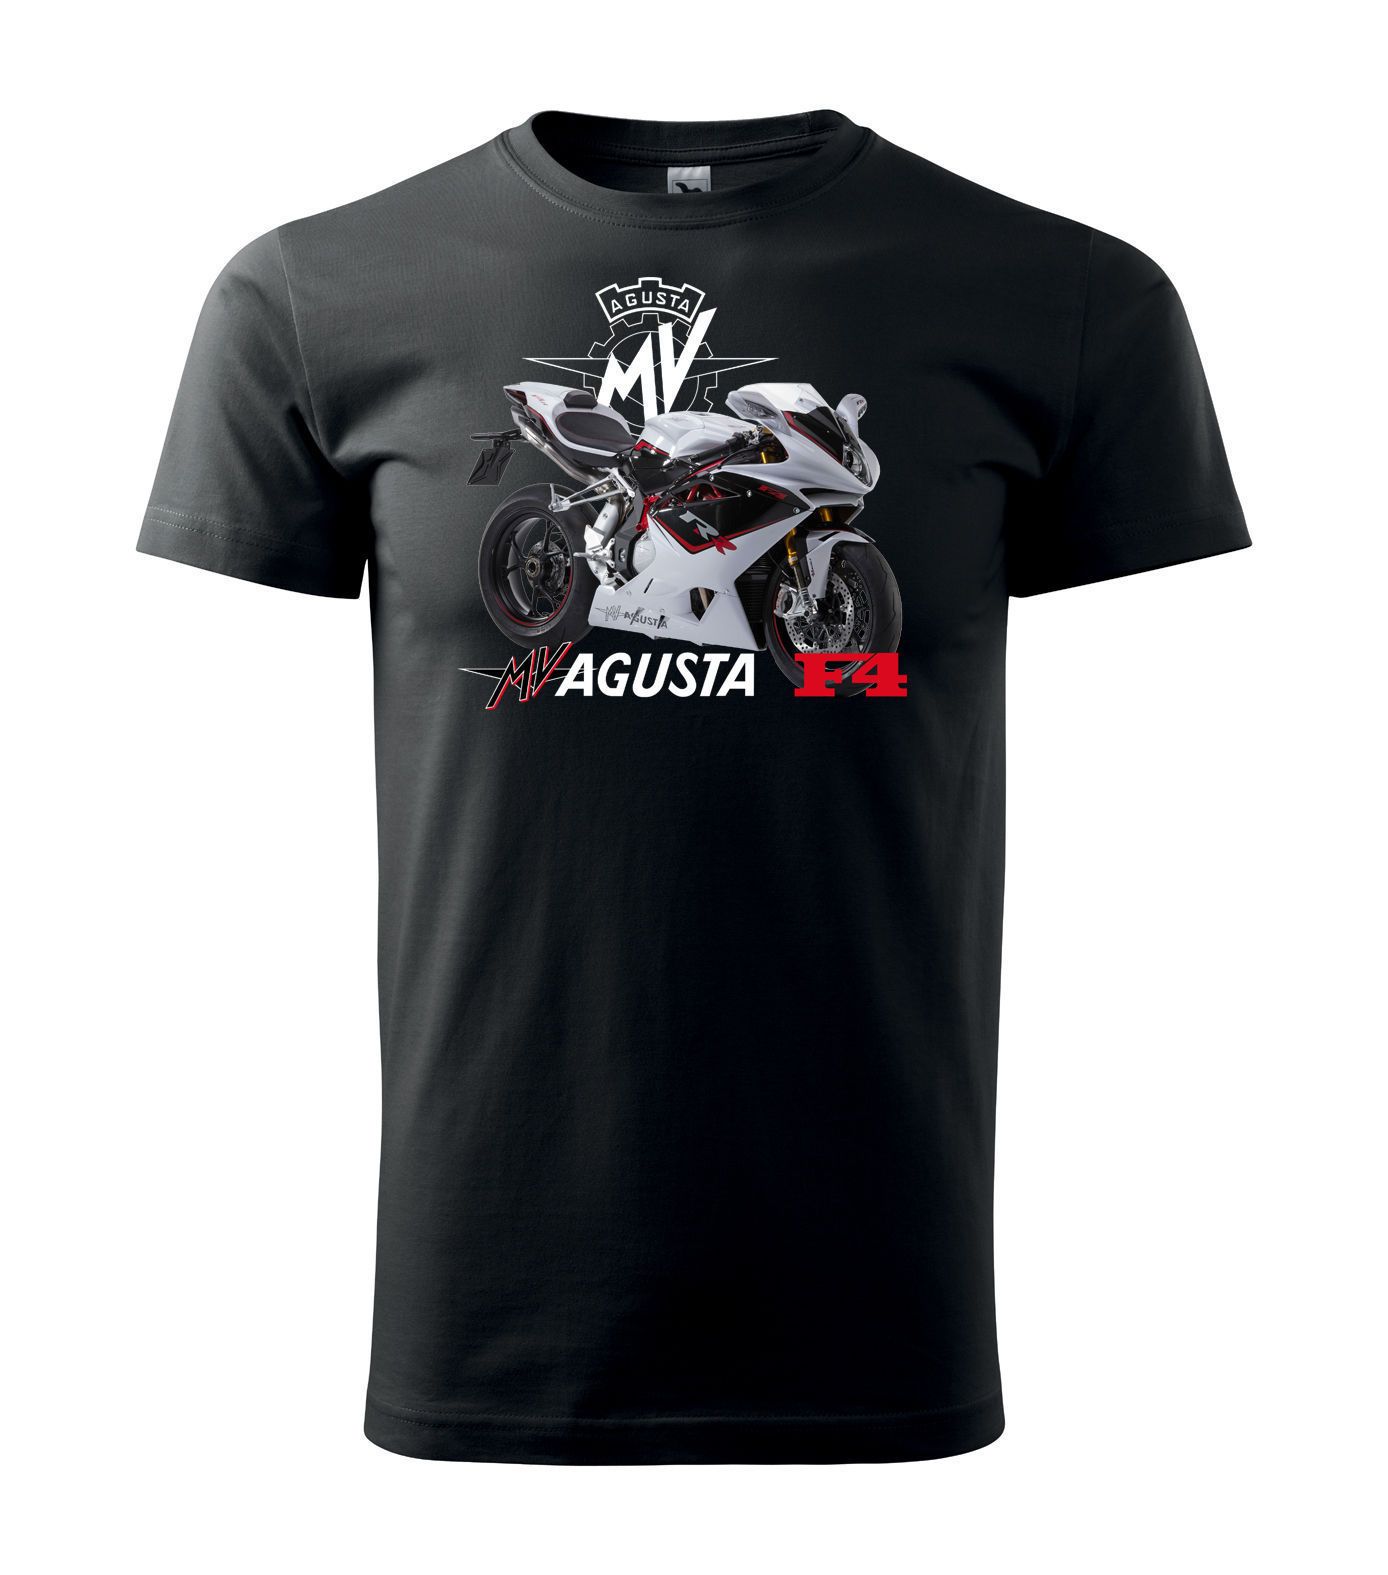 New Official MV AGUSTA Motorrad T-Shirt MV AGUSTA F4 T-Shirt Size S-3XL